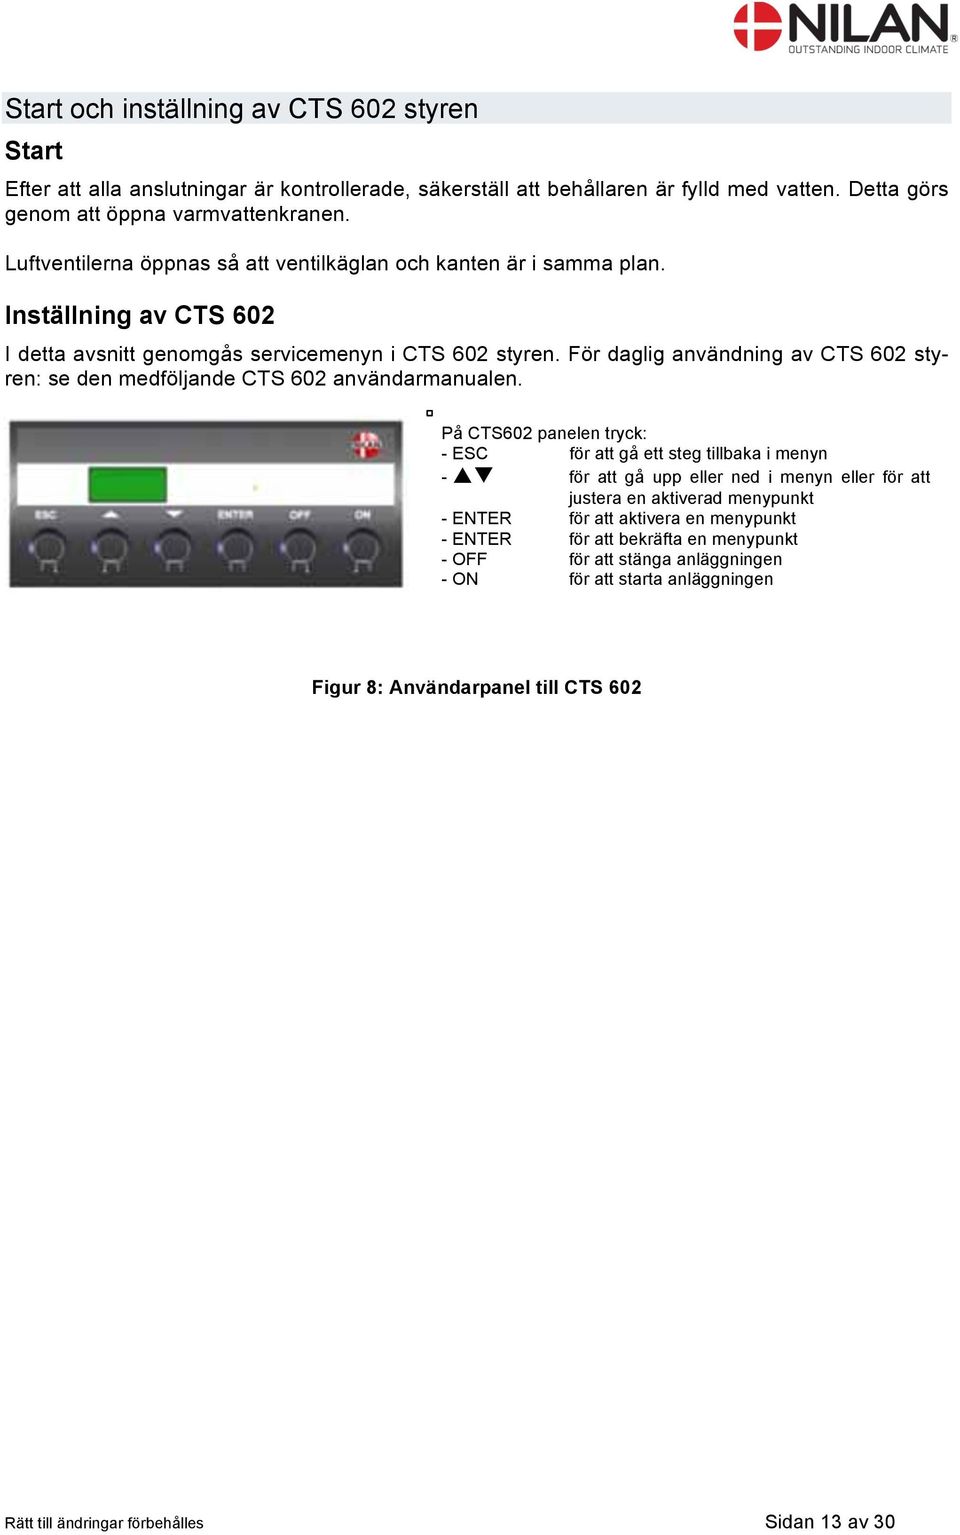 För daglig användning av CTS 602 styren: se den medföljande CTS 602 användarmanualen.